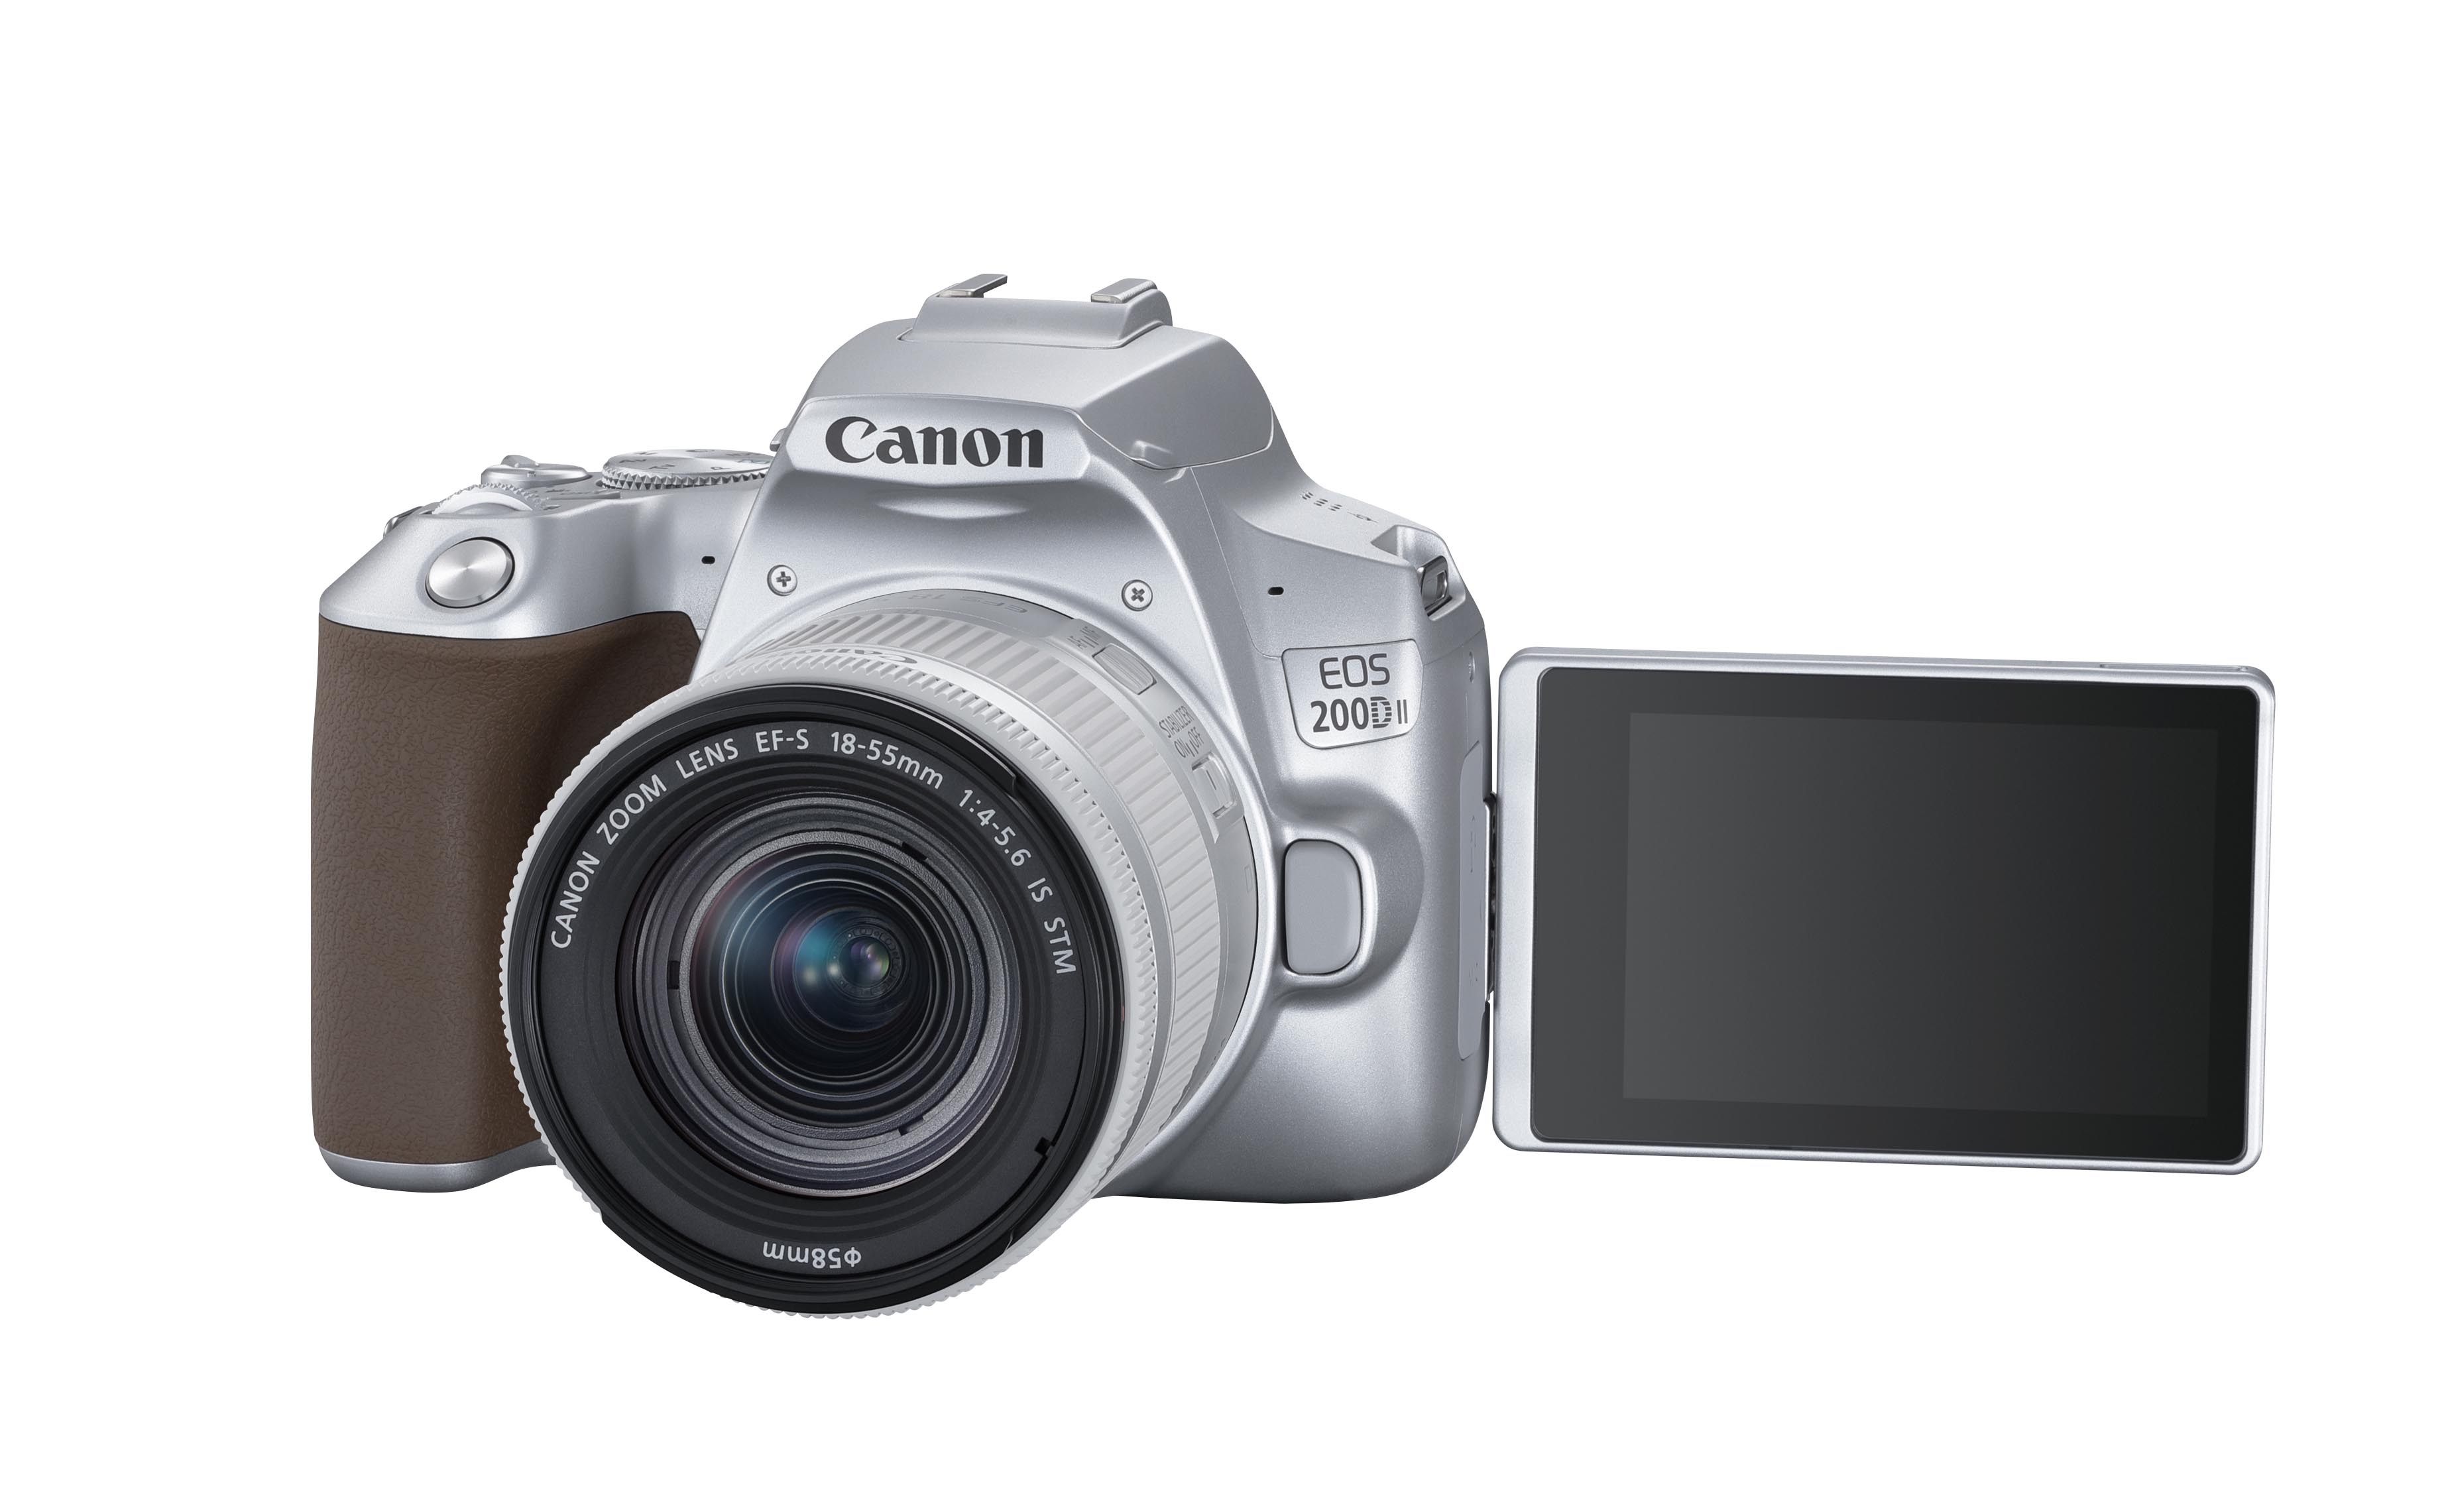 Canon ra mắt máy ảnh DSLR EOS 200D II : Gọn nhẹ, nhiều tính năng mới rất thú vị